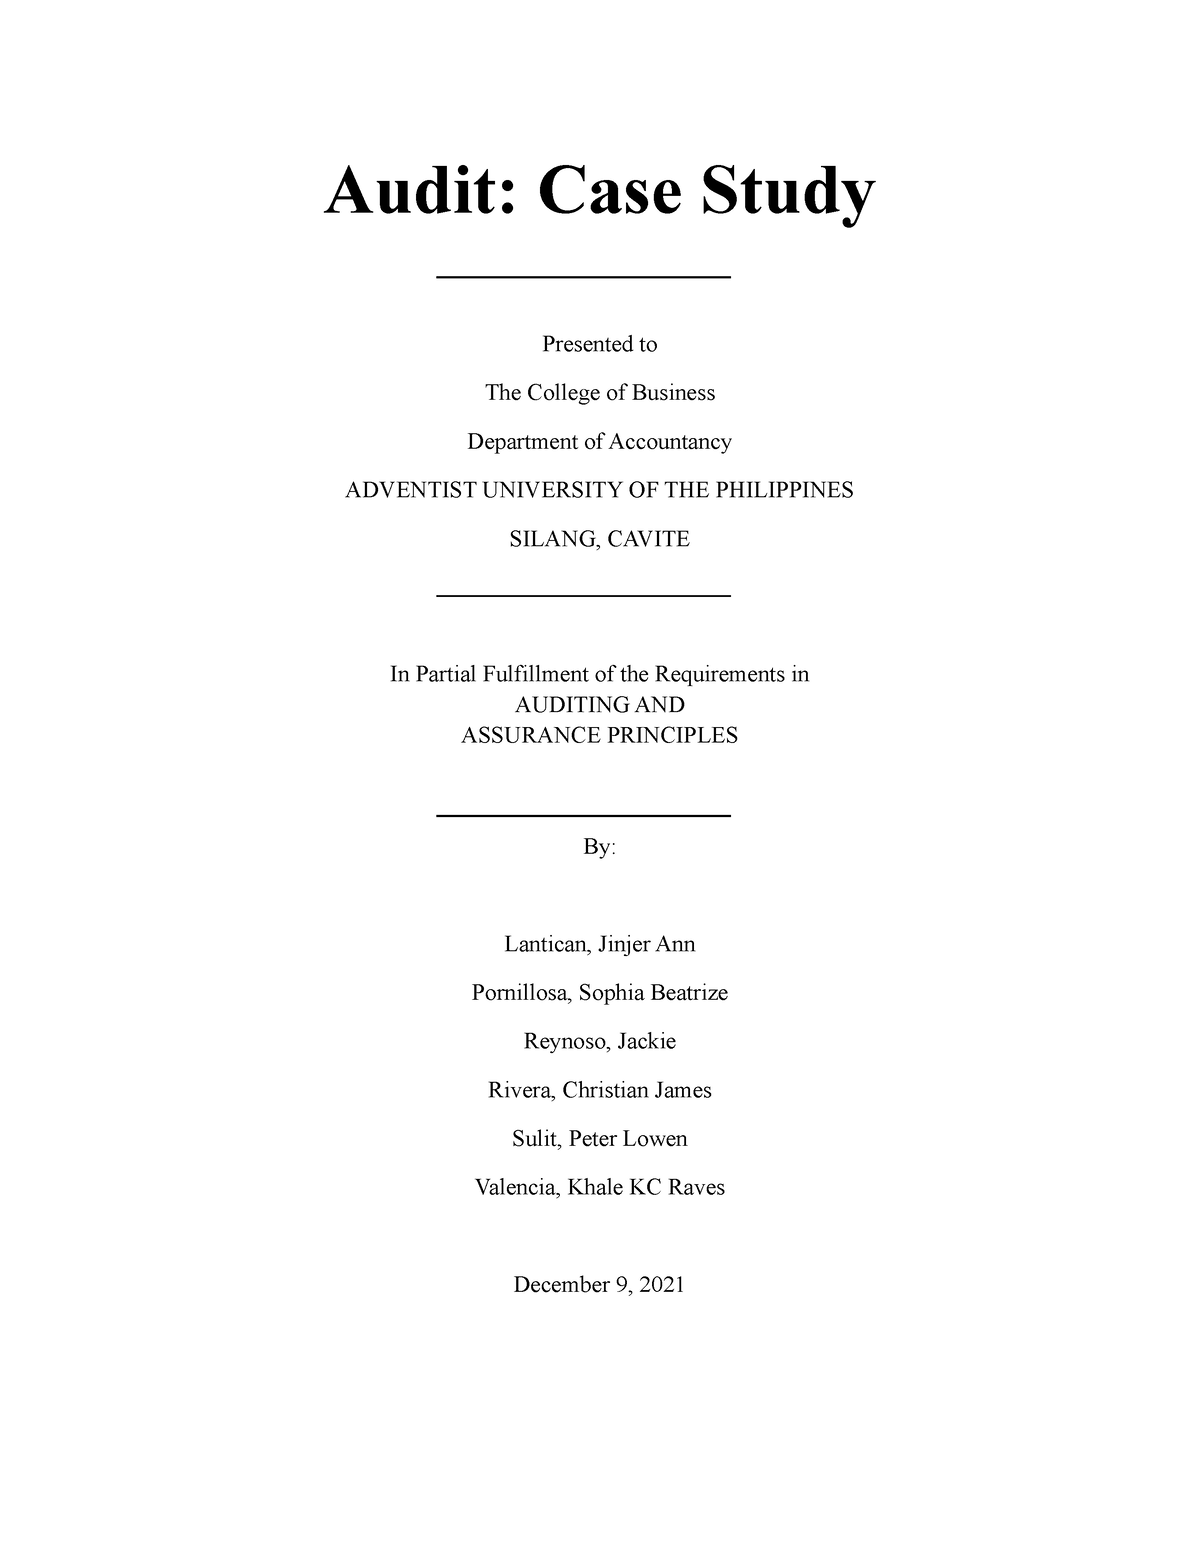 case study audit